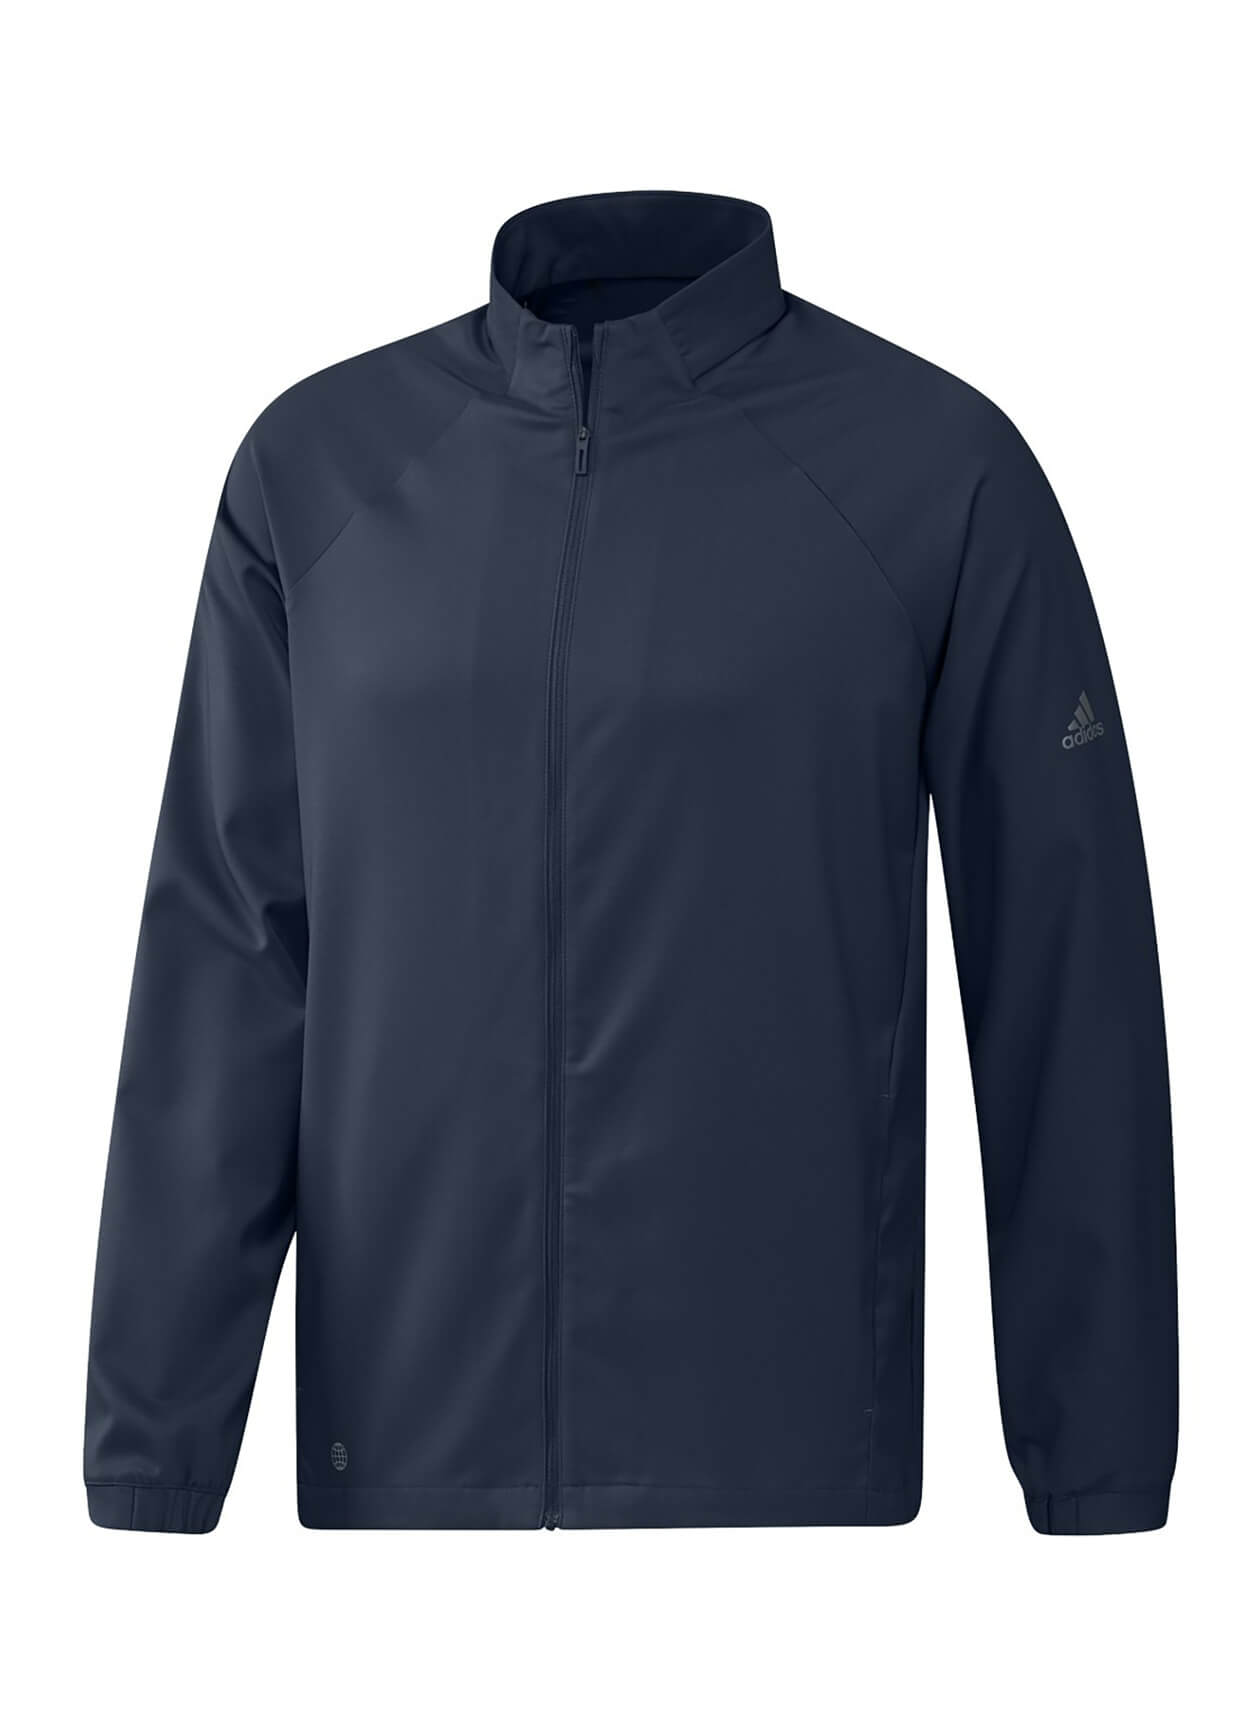 Adidas AD121 - Golf Men's Primegreen Jacket